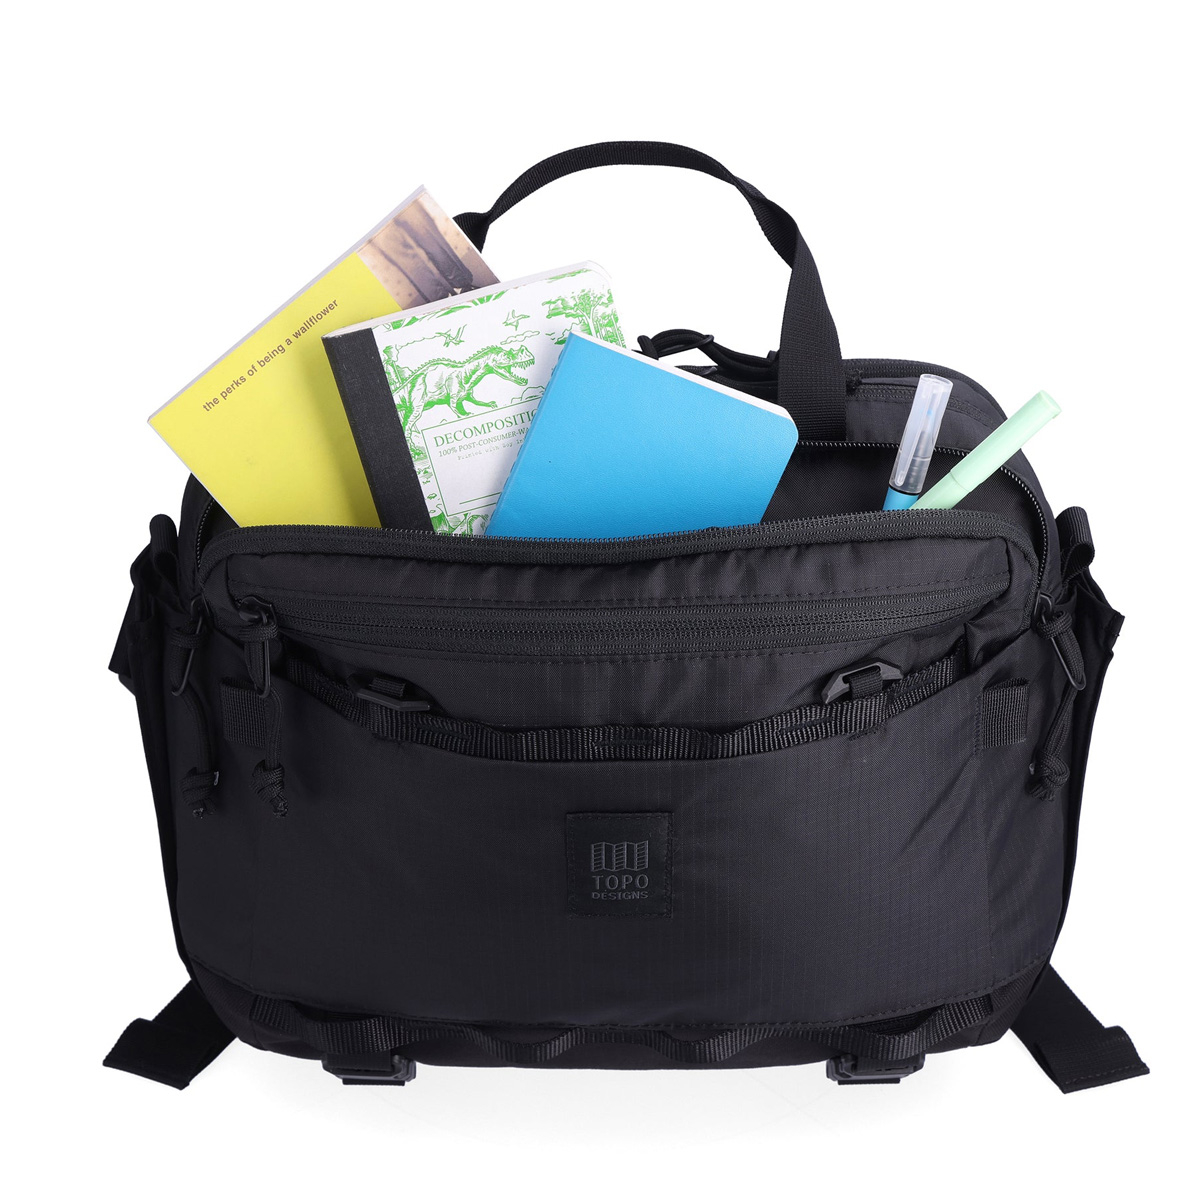 Topo Designs Mountain Cross Bag Black, ideale sling bag in messengerstijl voor dagelijks gebruik en nog veel meer